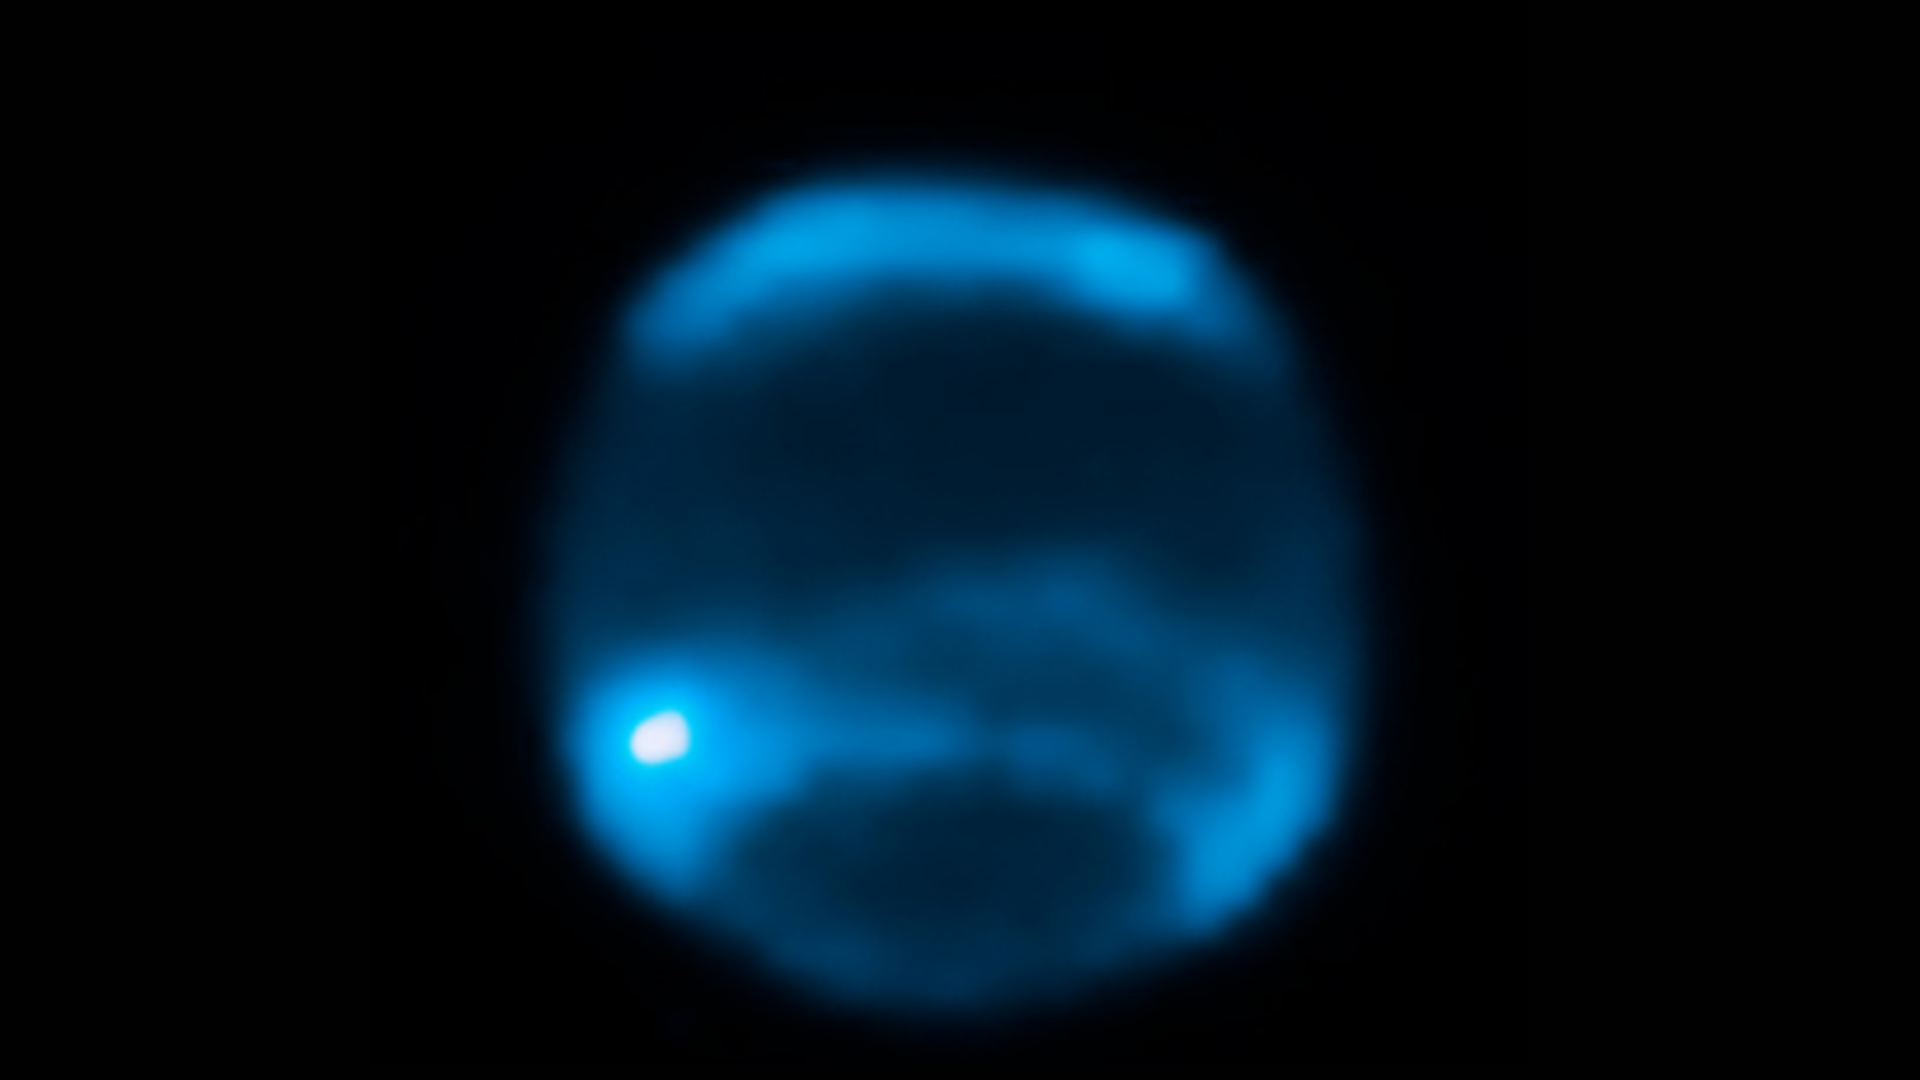 Gambar buram neptunus, bergaris-garis tebal berwarna biru dan biru tua.